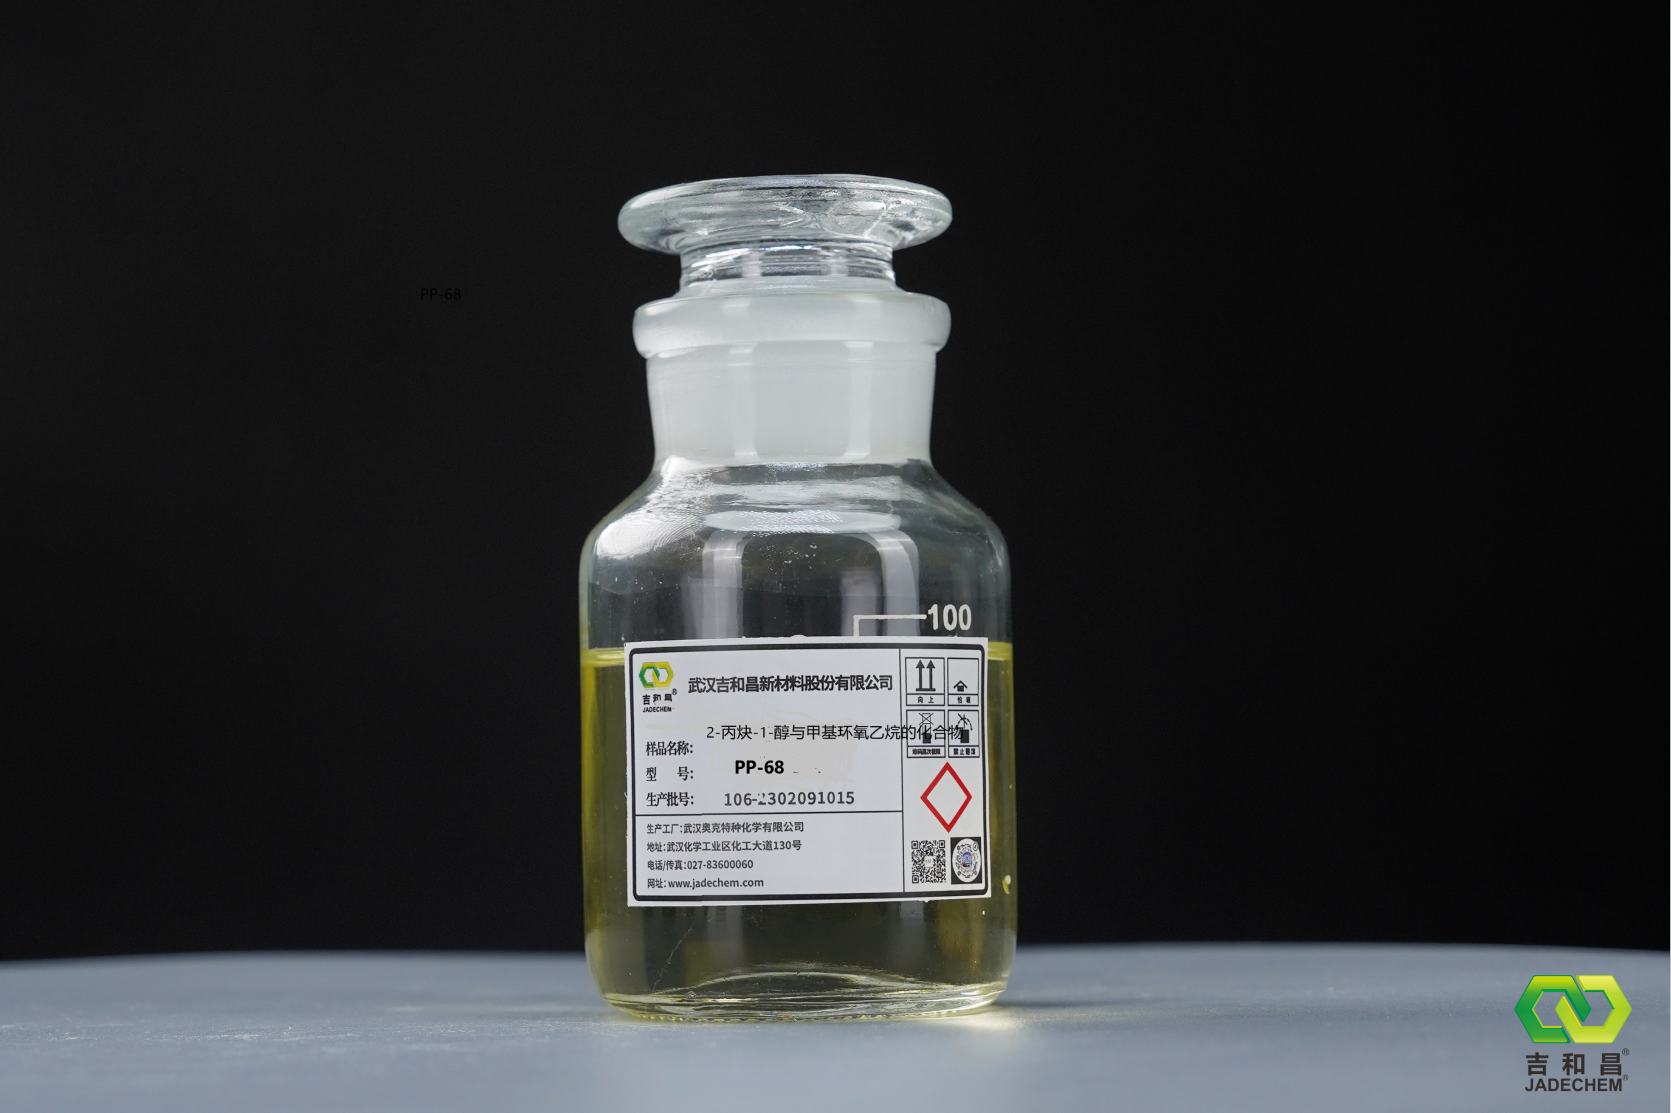  2-丙炔-1-醇与甲基环氧乙烷的化合物（PP -68缓蚀剂）